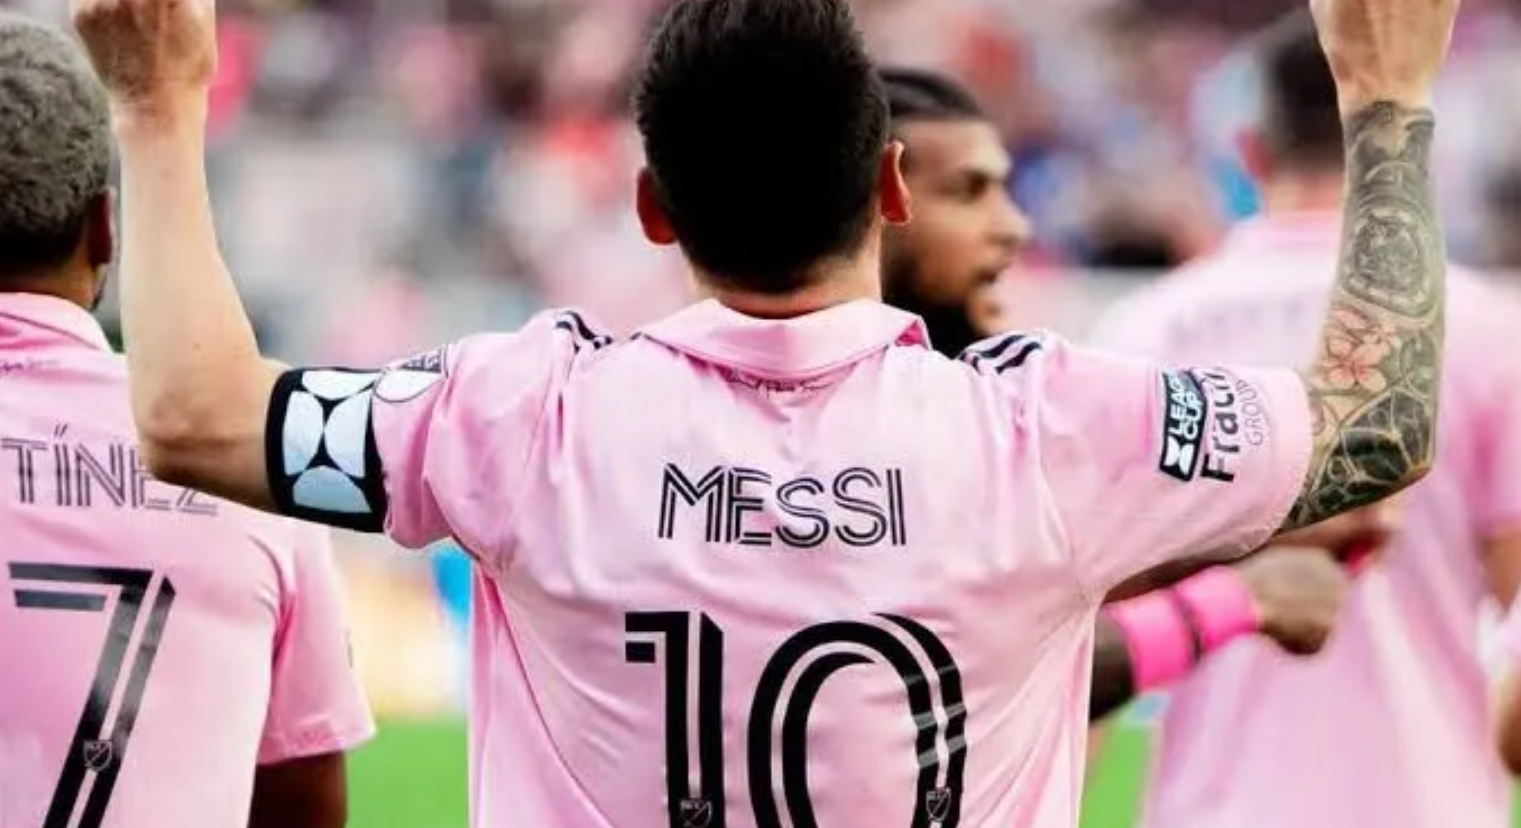 Messi lidera la lista de camisetas más vendidas de la MLS